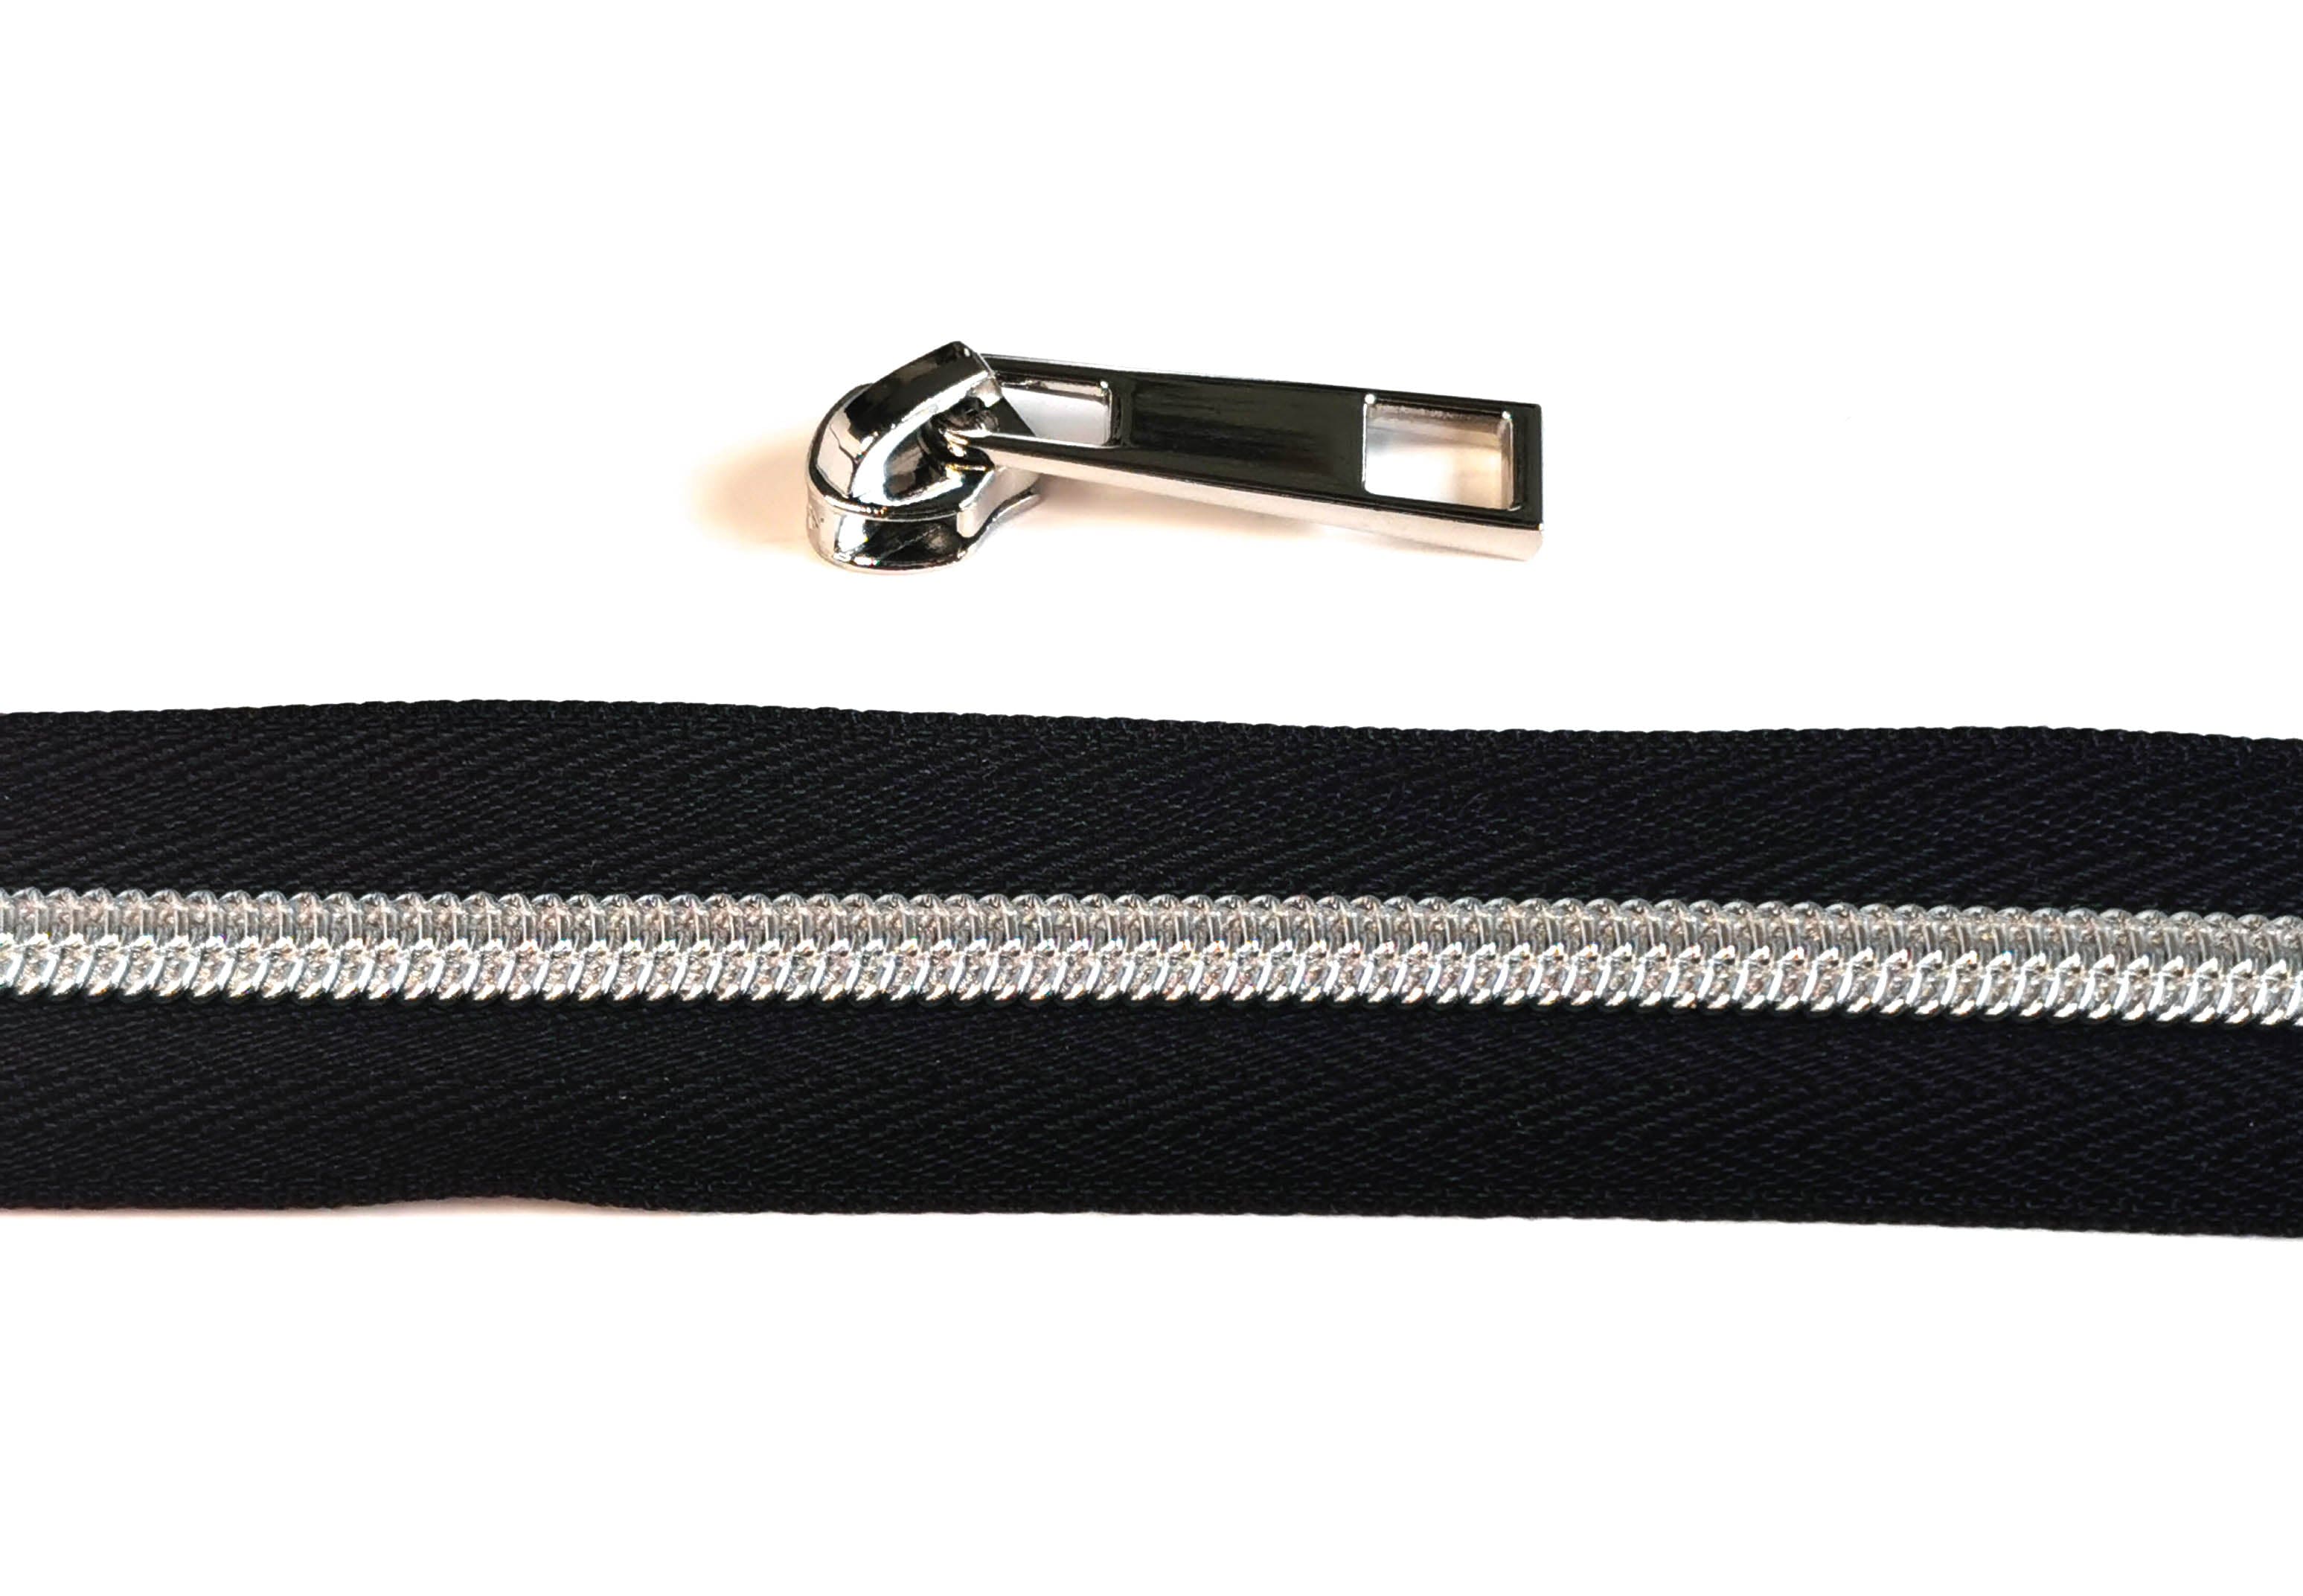 Kiwi Bagineers Zippers Black / Nickel silver Zipper Tape. 30" 76cm of #5 Zipper tape with 2 Zipper Sliders/Pullers By Kiwi Bagineers